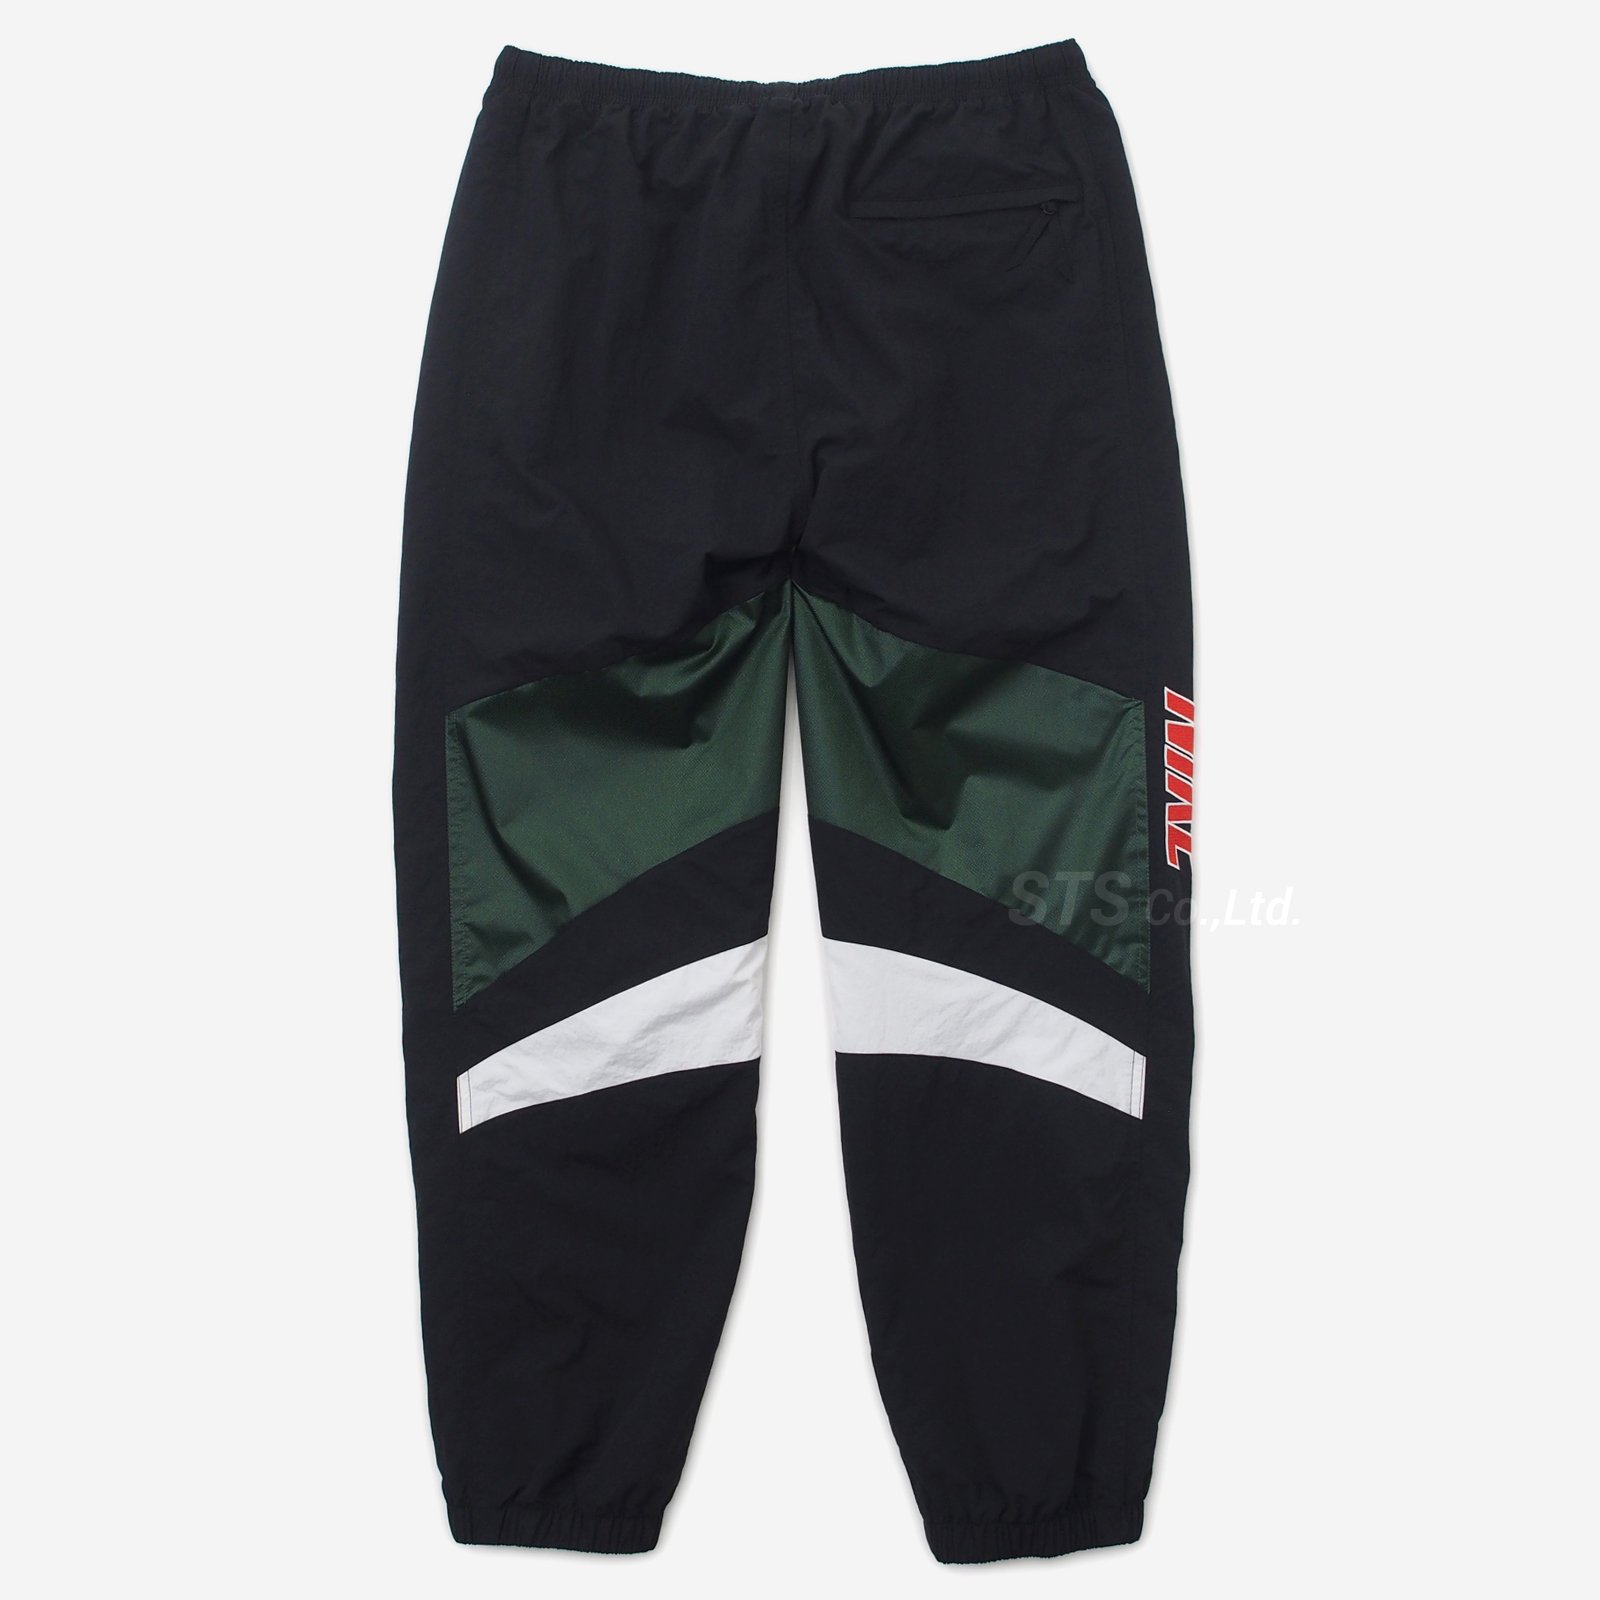 Supreme/Nike Warm Up Pant - UG.SHAFT